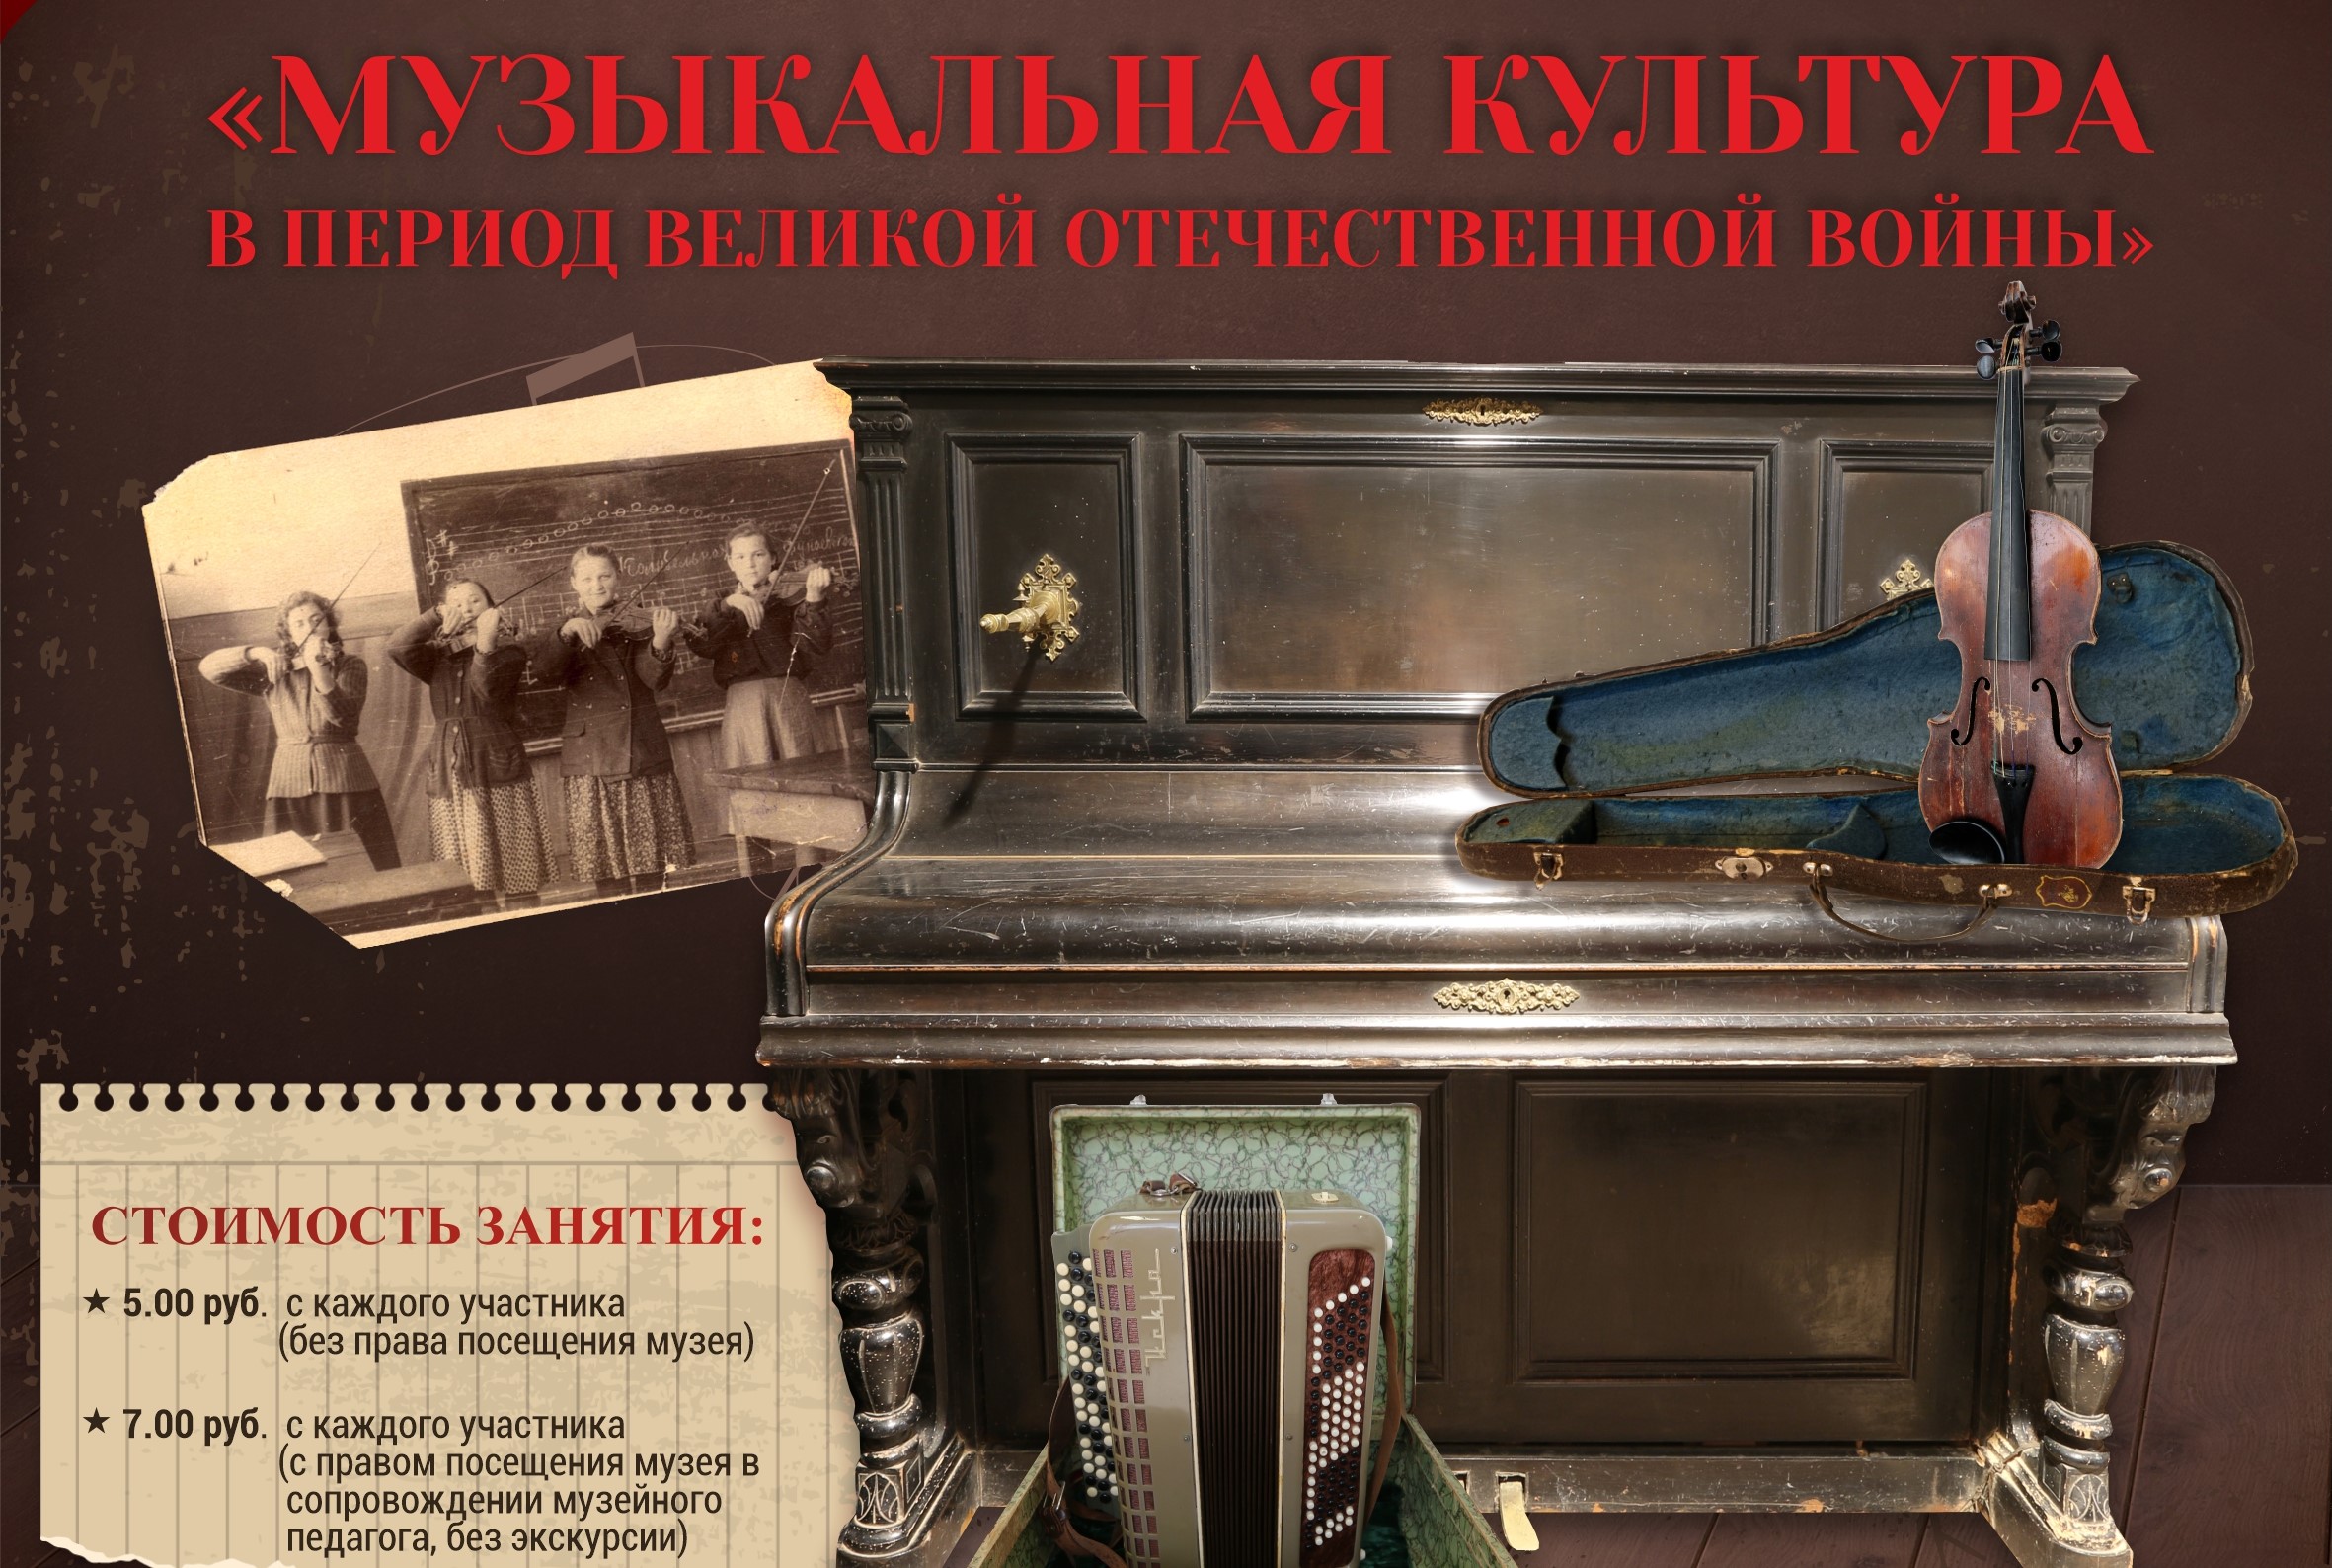 Приглашаем на новое музейное занятие "Музыкальная культура в период Великой Отечественной войны"